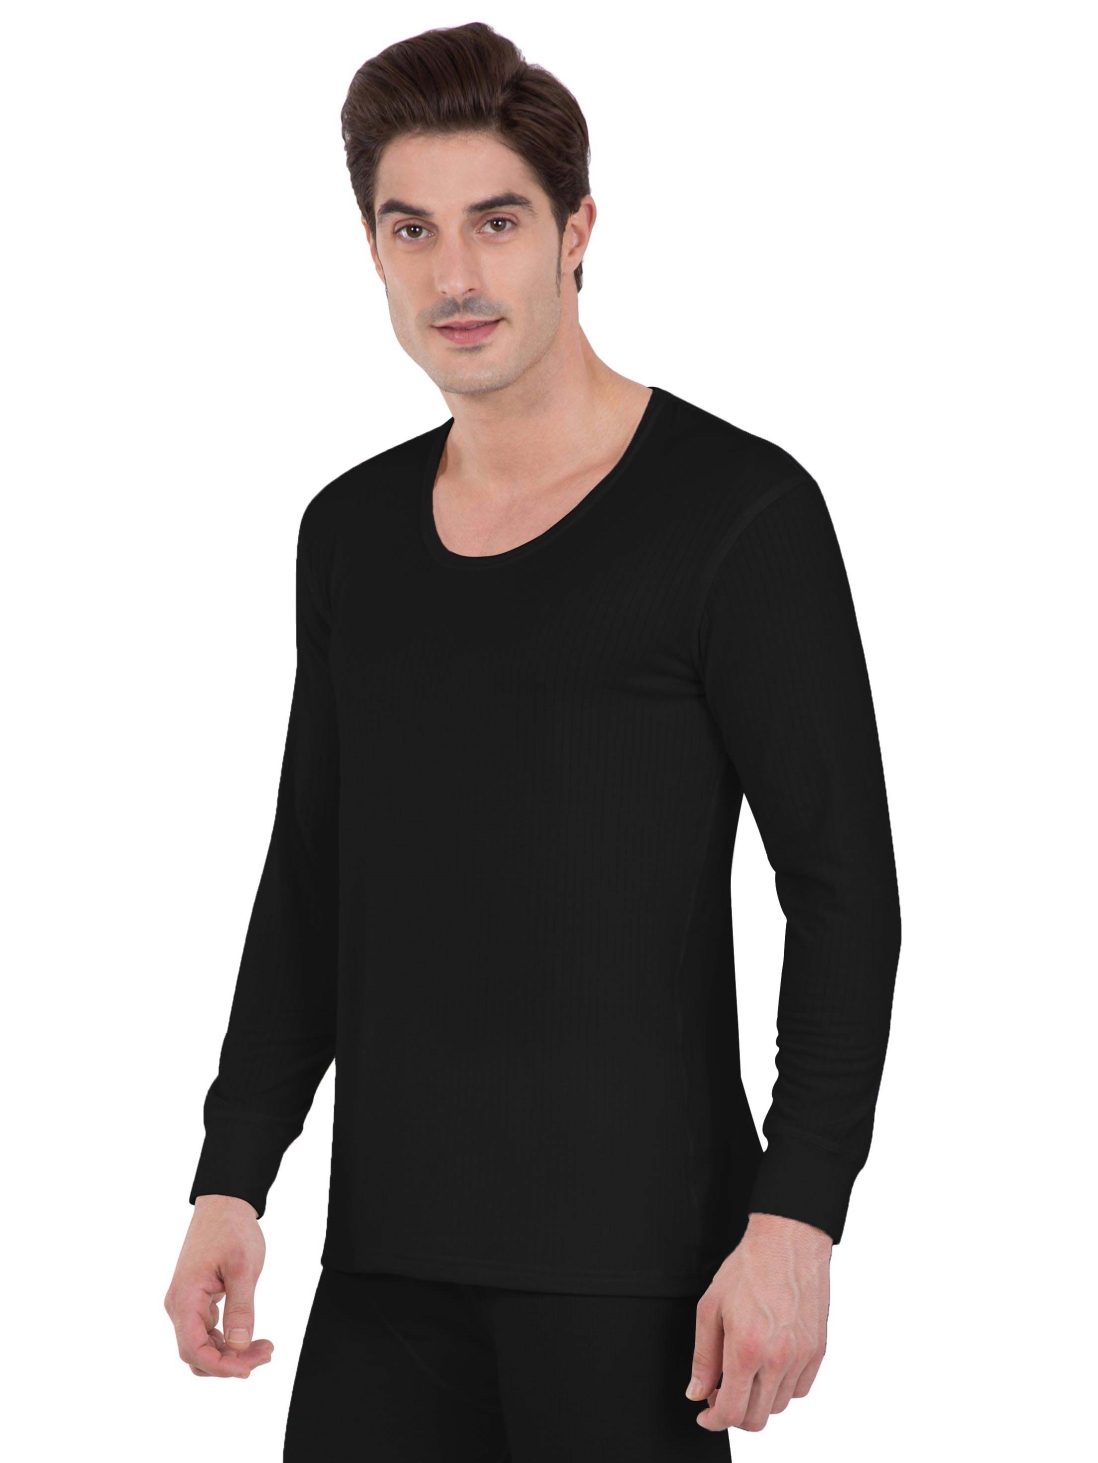 Buy Jockey Black Long Sleeve Vest For Men Online @ ₹909 from ShopClues